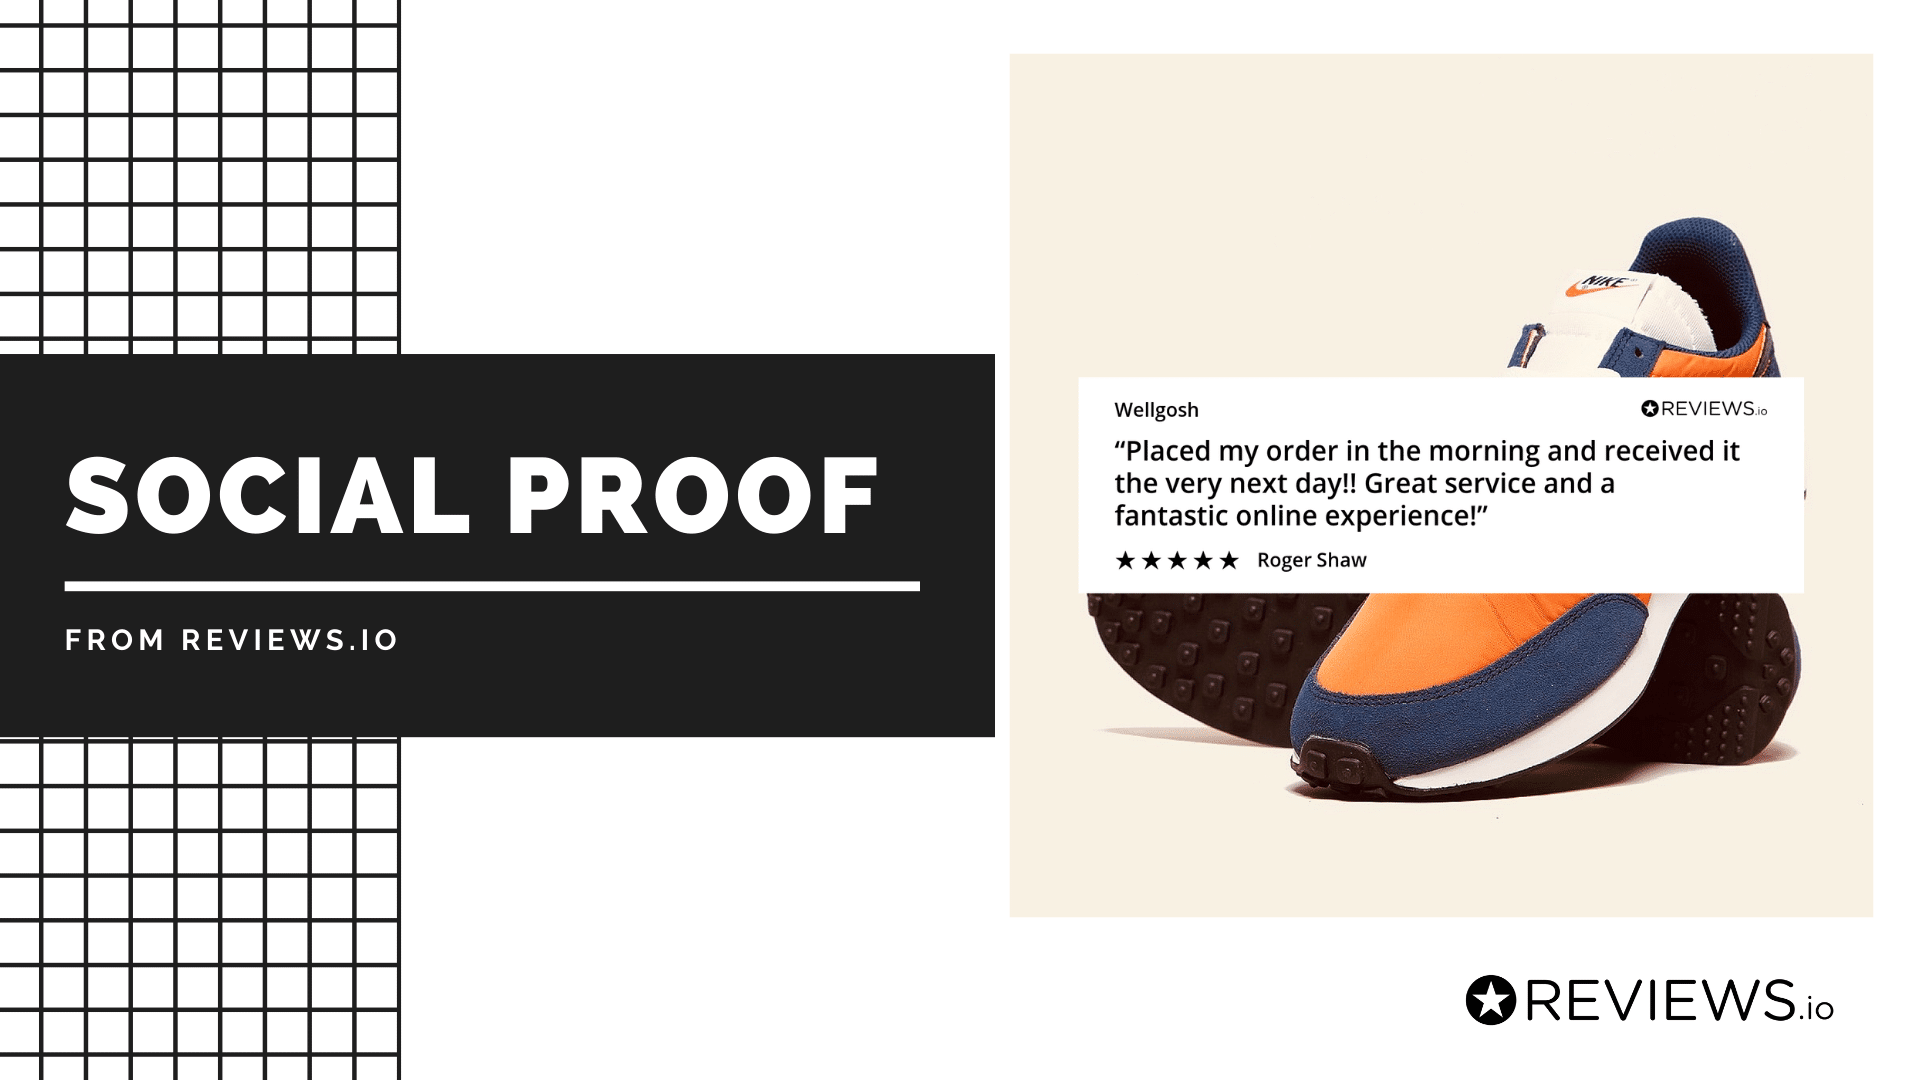 Marketingbild von Reviews.io mit einem Zitat eines zufriedenen Kunden über den Service am nächsten Tag, unter der Überschrift 'Social Proof'.